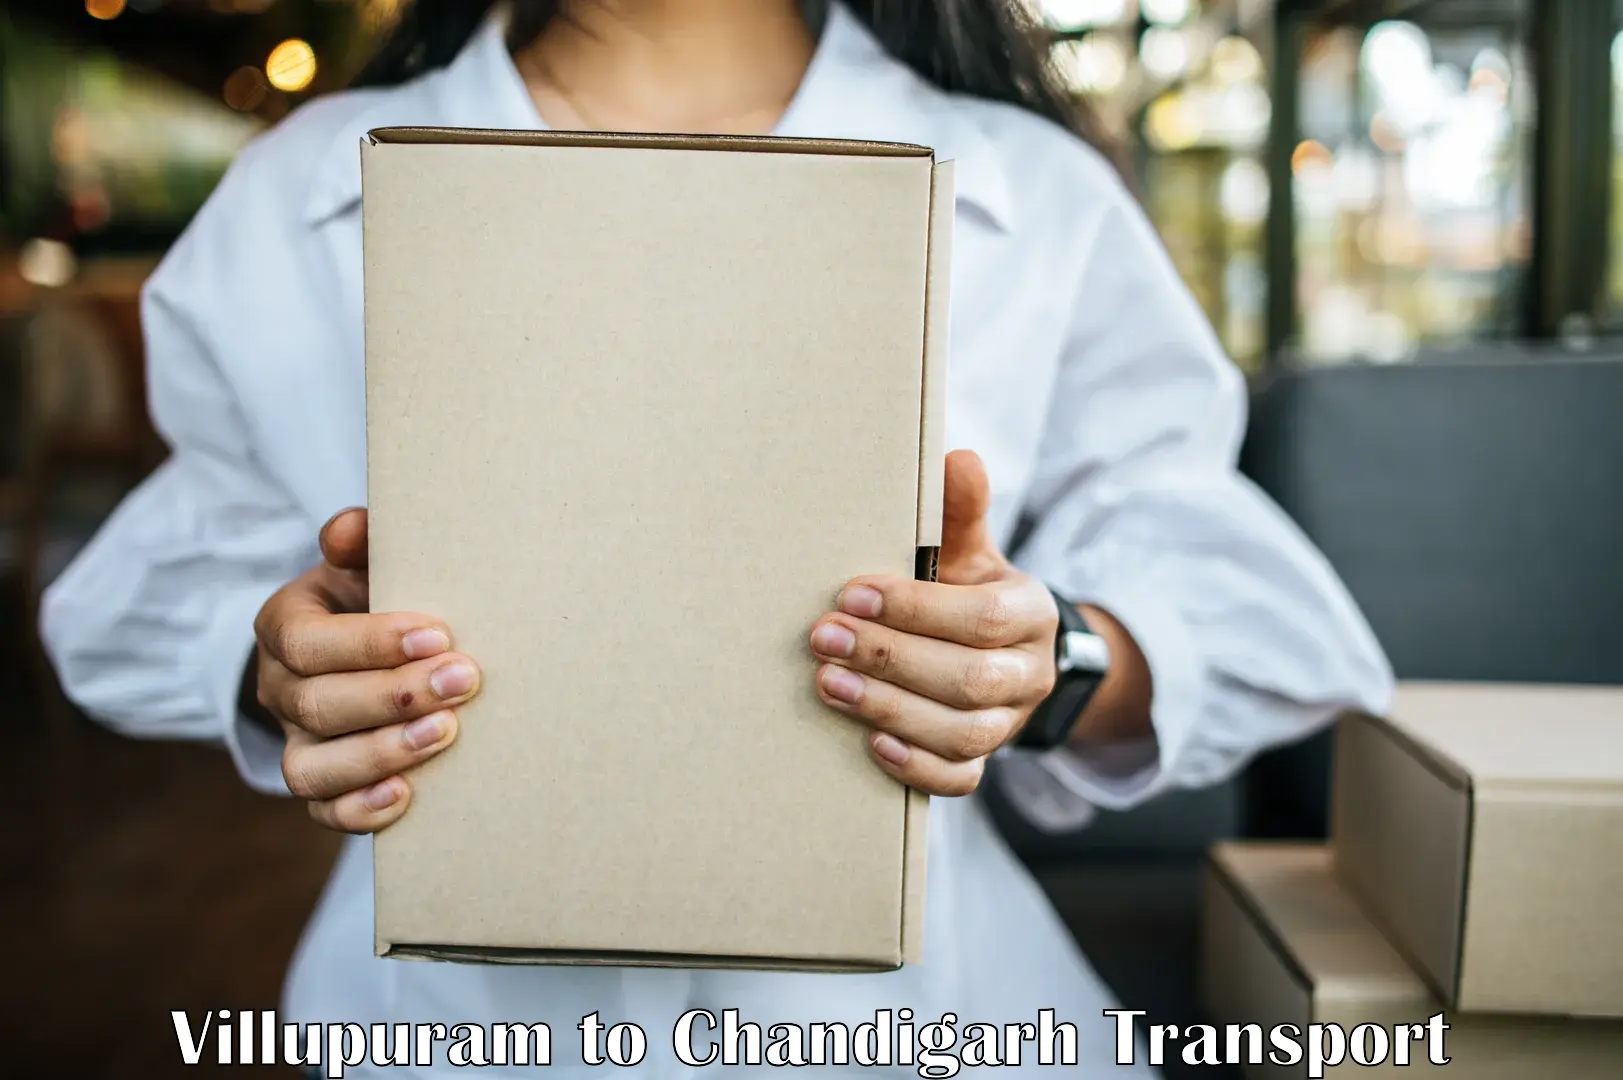 Transportation solution services Villupuram to Chandigarh